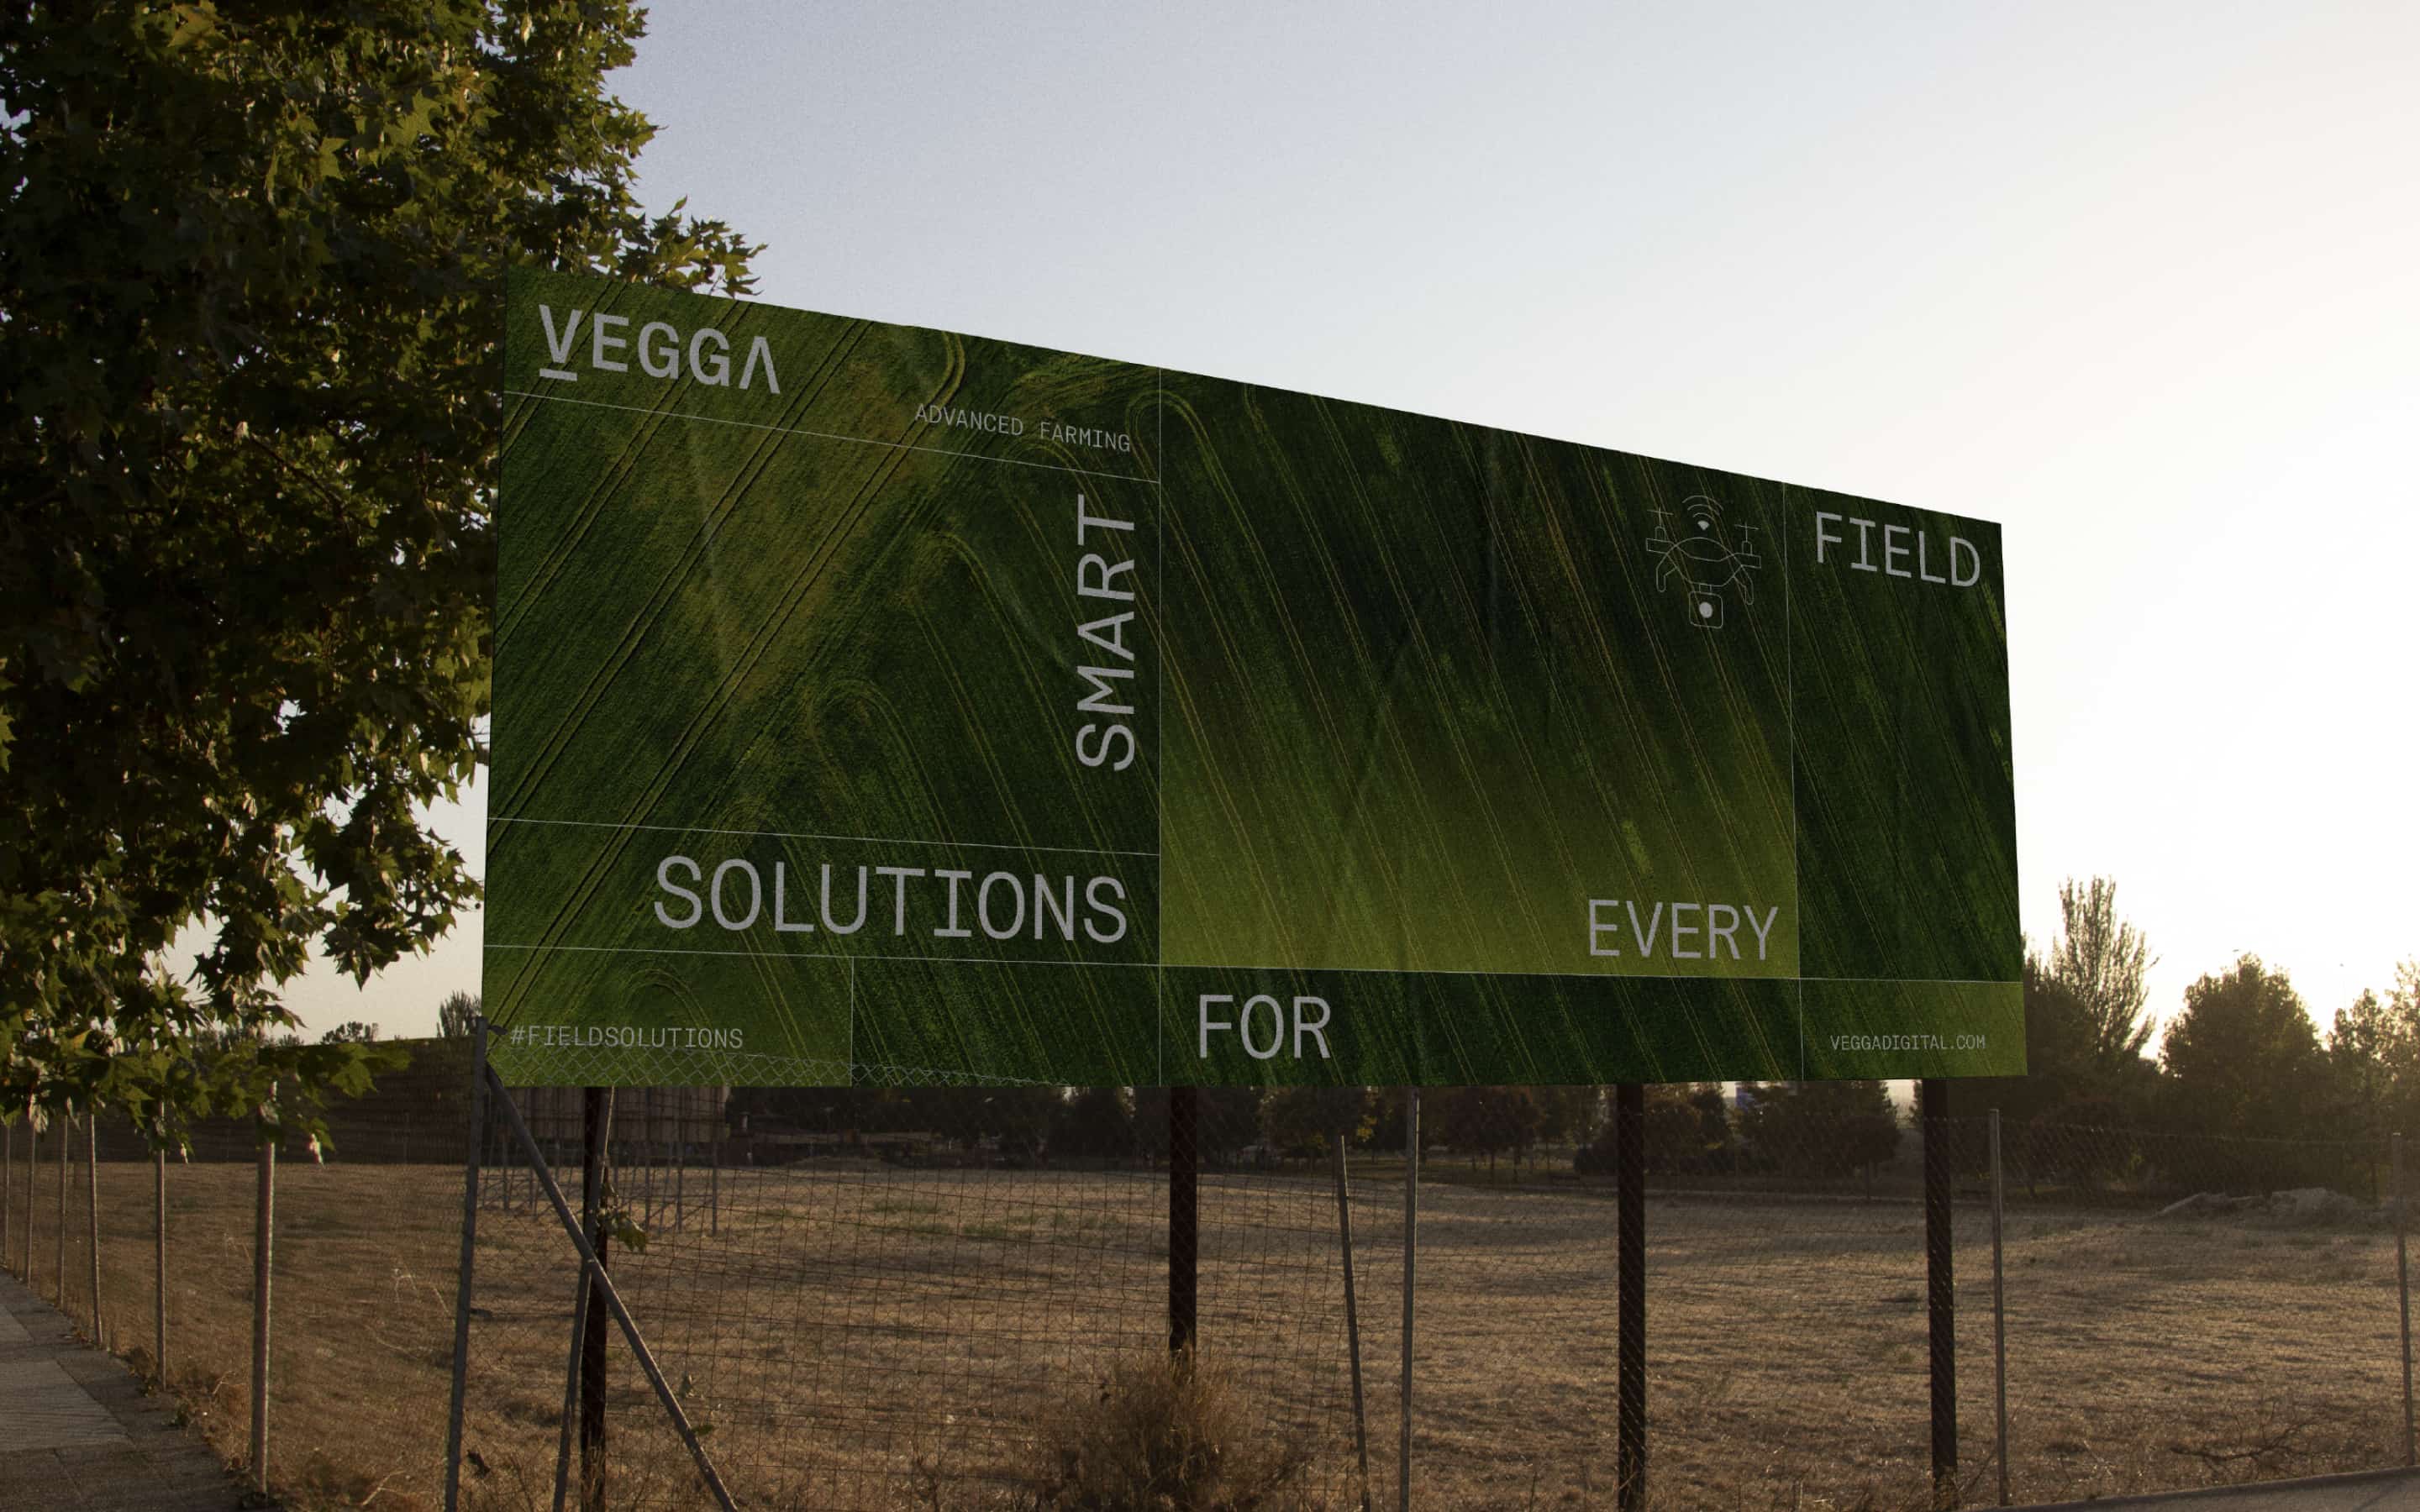 Debíamos definir la estrategia y la identidad visual de Vegga, una marca creada por MatHolding y Sistemes Electrònics Progrés. Una plataforma digital de “Smart Farming” nacida para revolucionar la agricultura de manera eficiente y sostenible.
